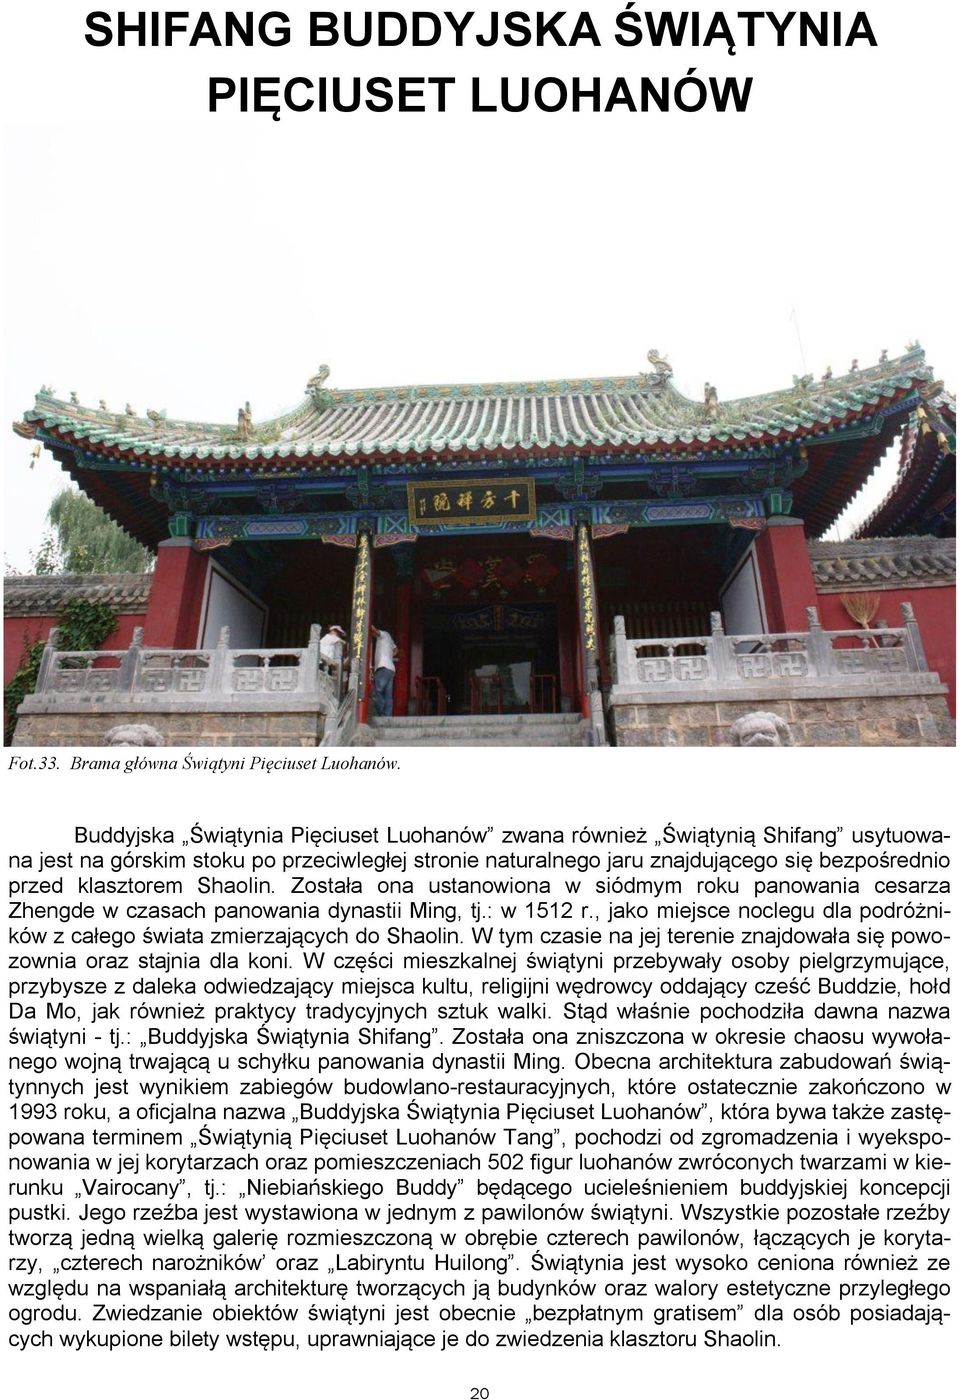 Shaolin. Została ona ustanowiona w siódmym roku panowania cesarza Zhengde w czasach panowania dynastii Ming, tj.: w 1512 r.